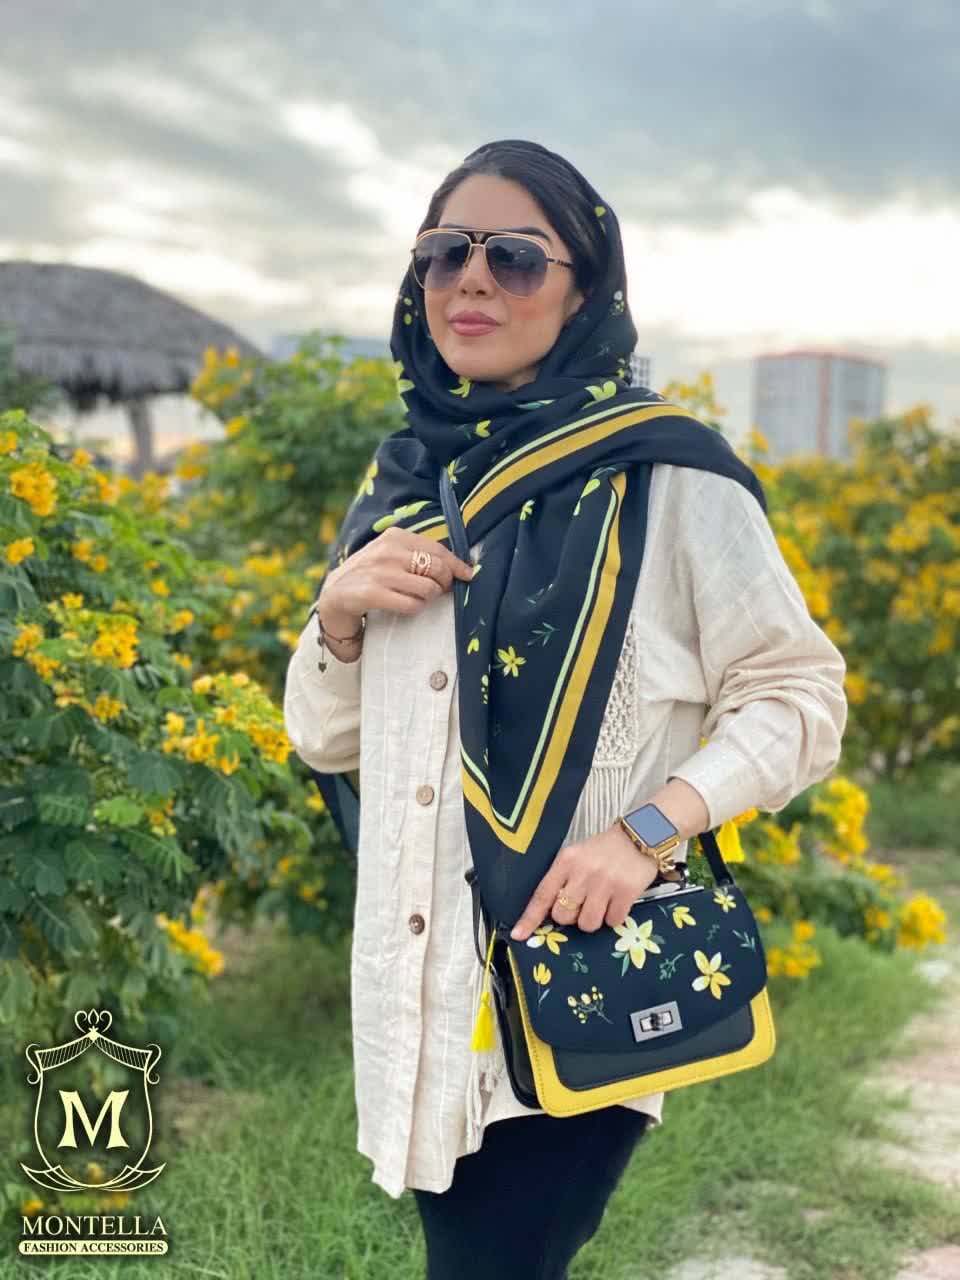 ست کیف و روسری زنانه طرح فلاور رنگ مشکی با گل های زرد با کیف دسته چرمی کیفیت عالی با ارسال رایگان کد mo414